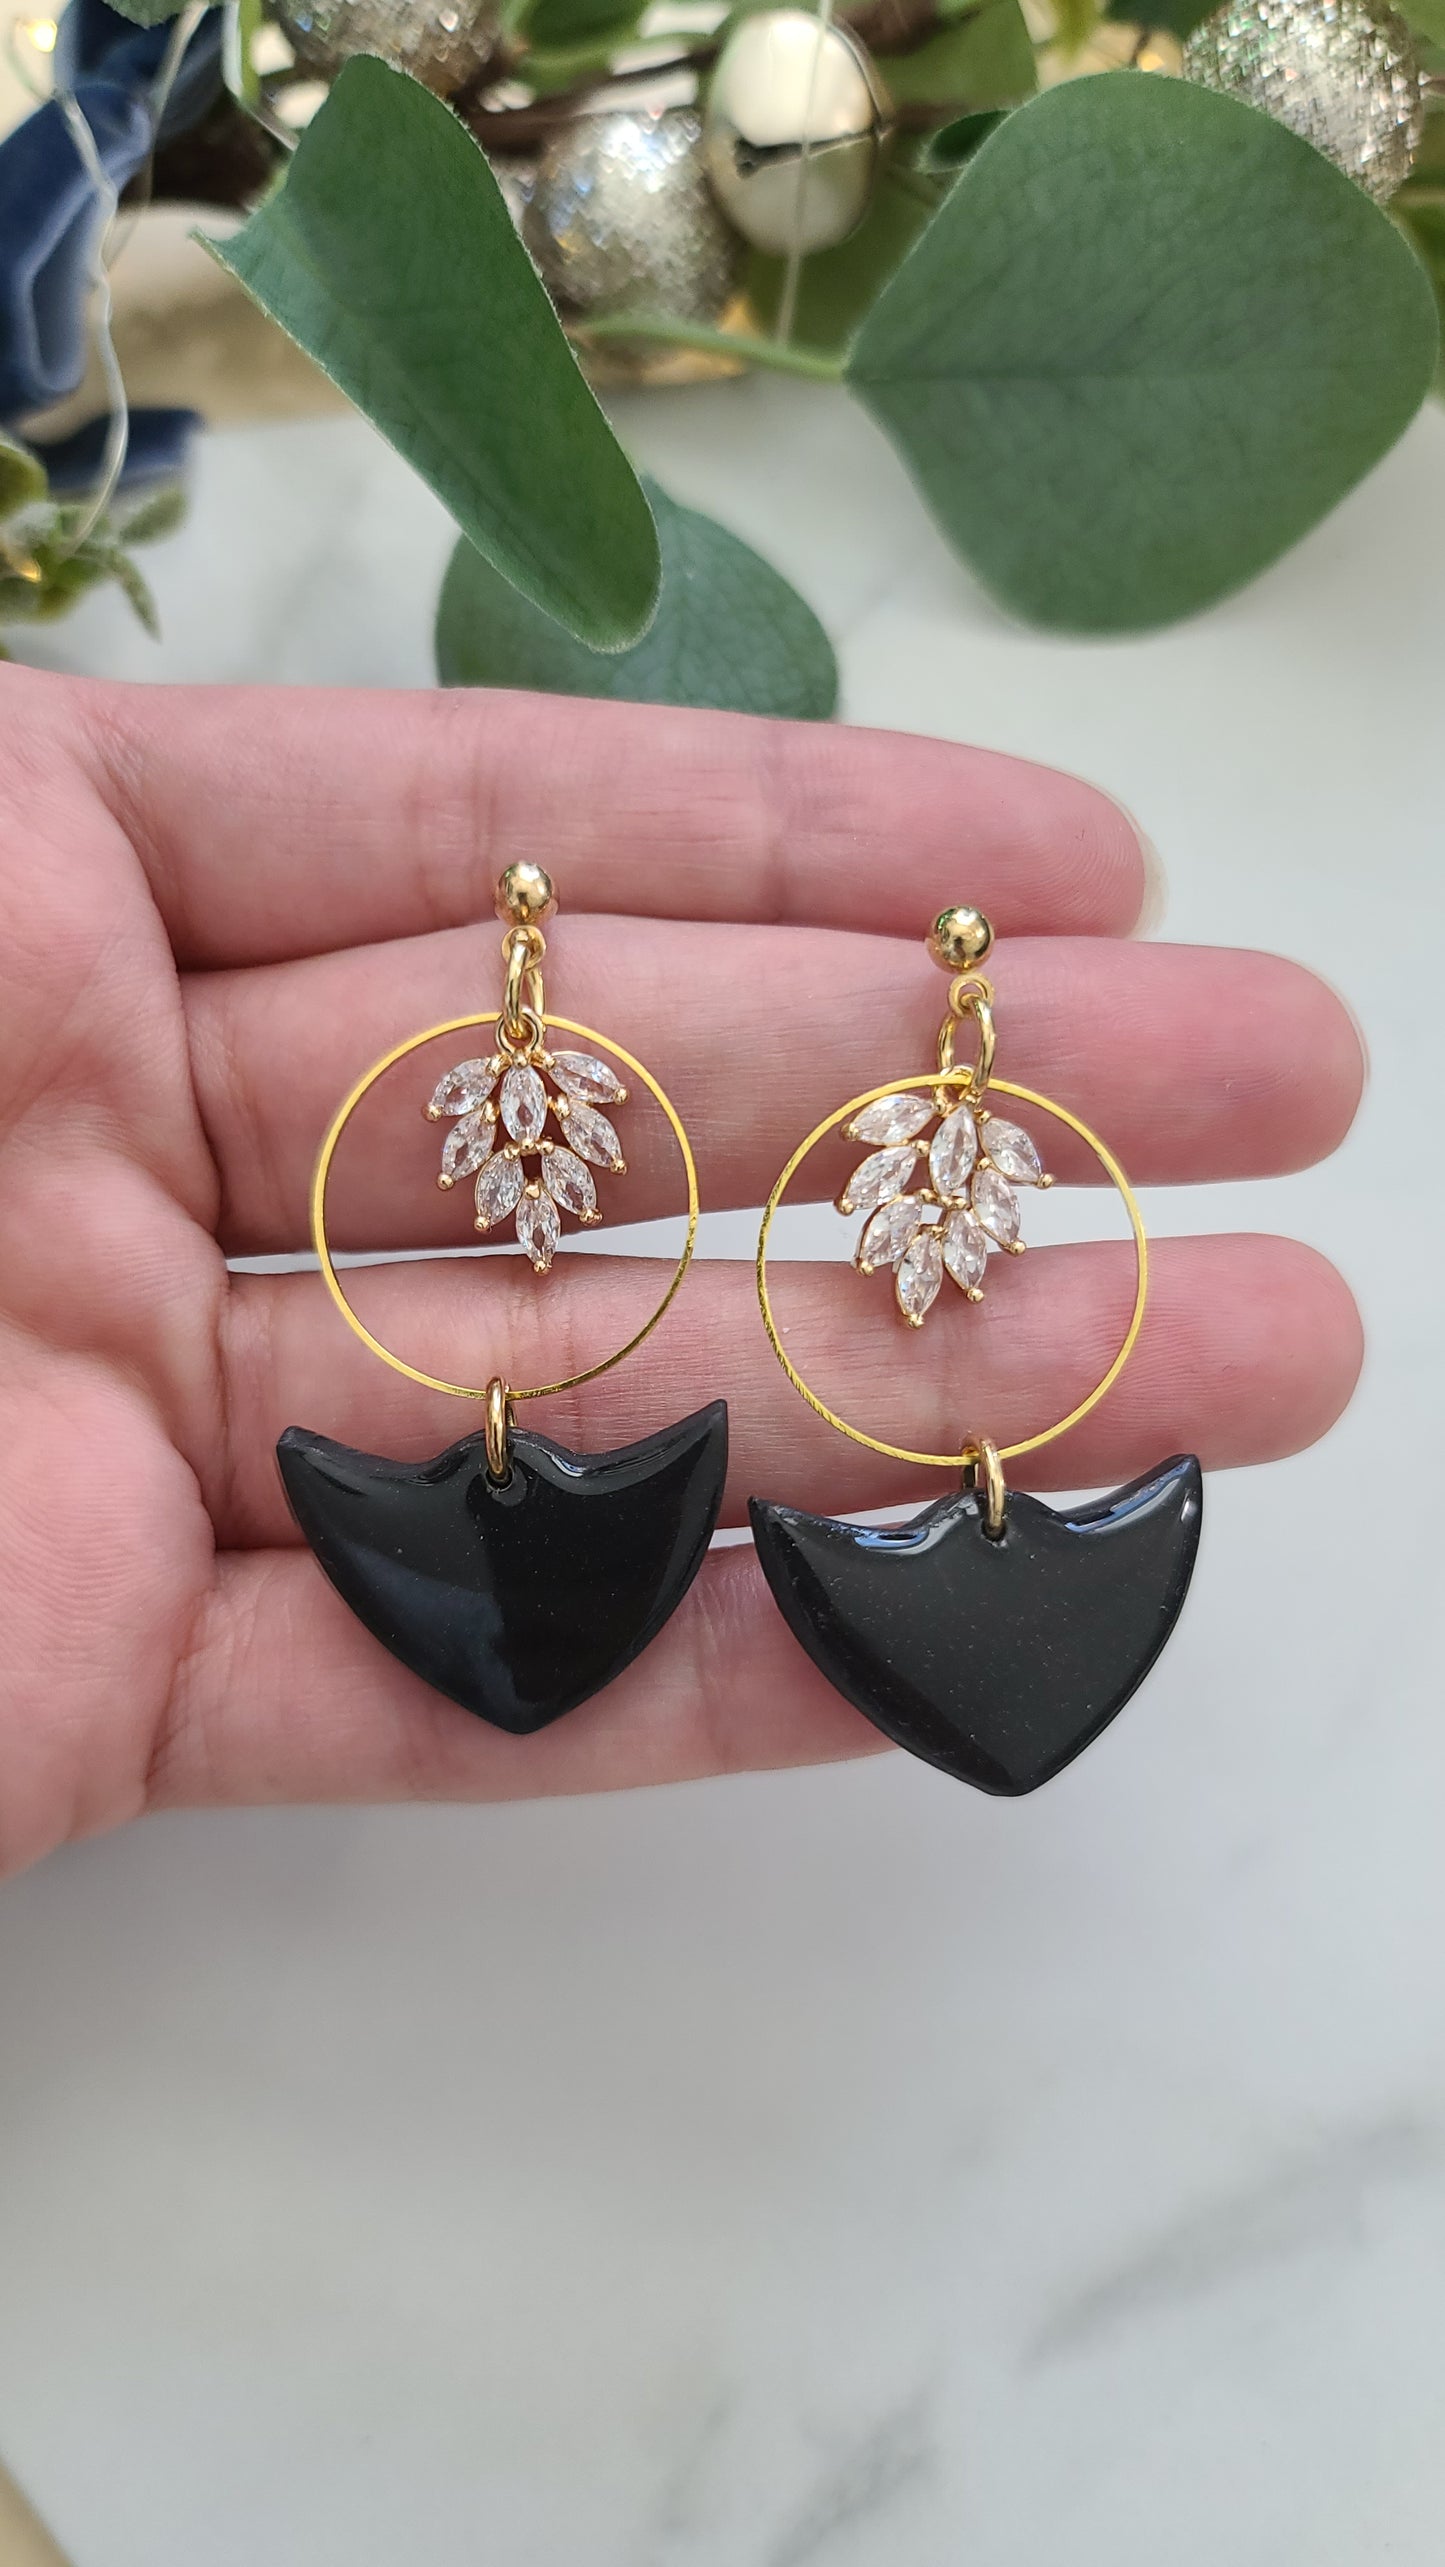 Black dangle earrings